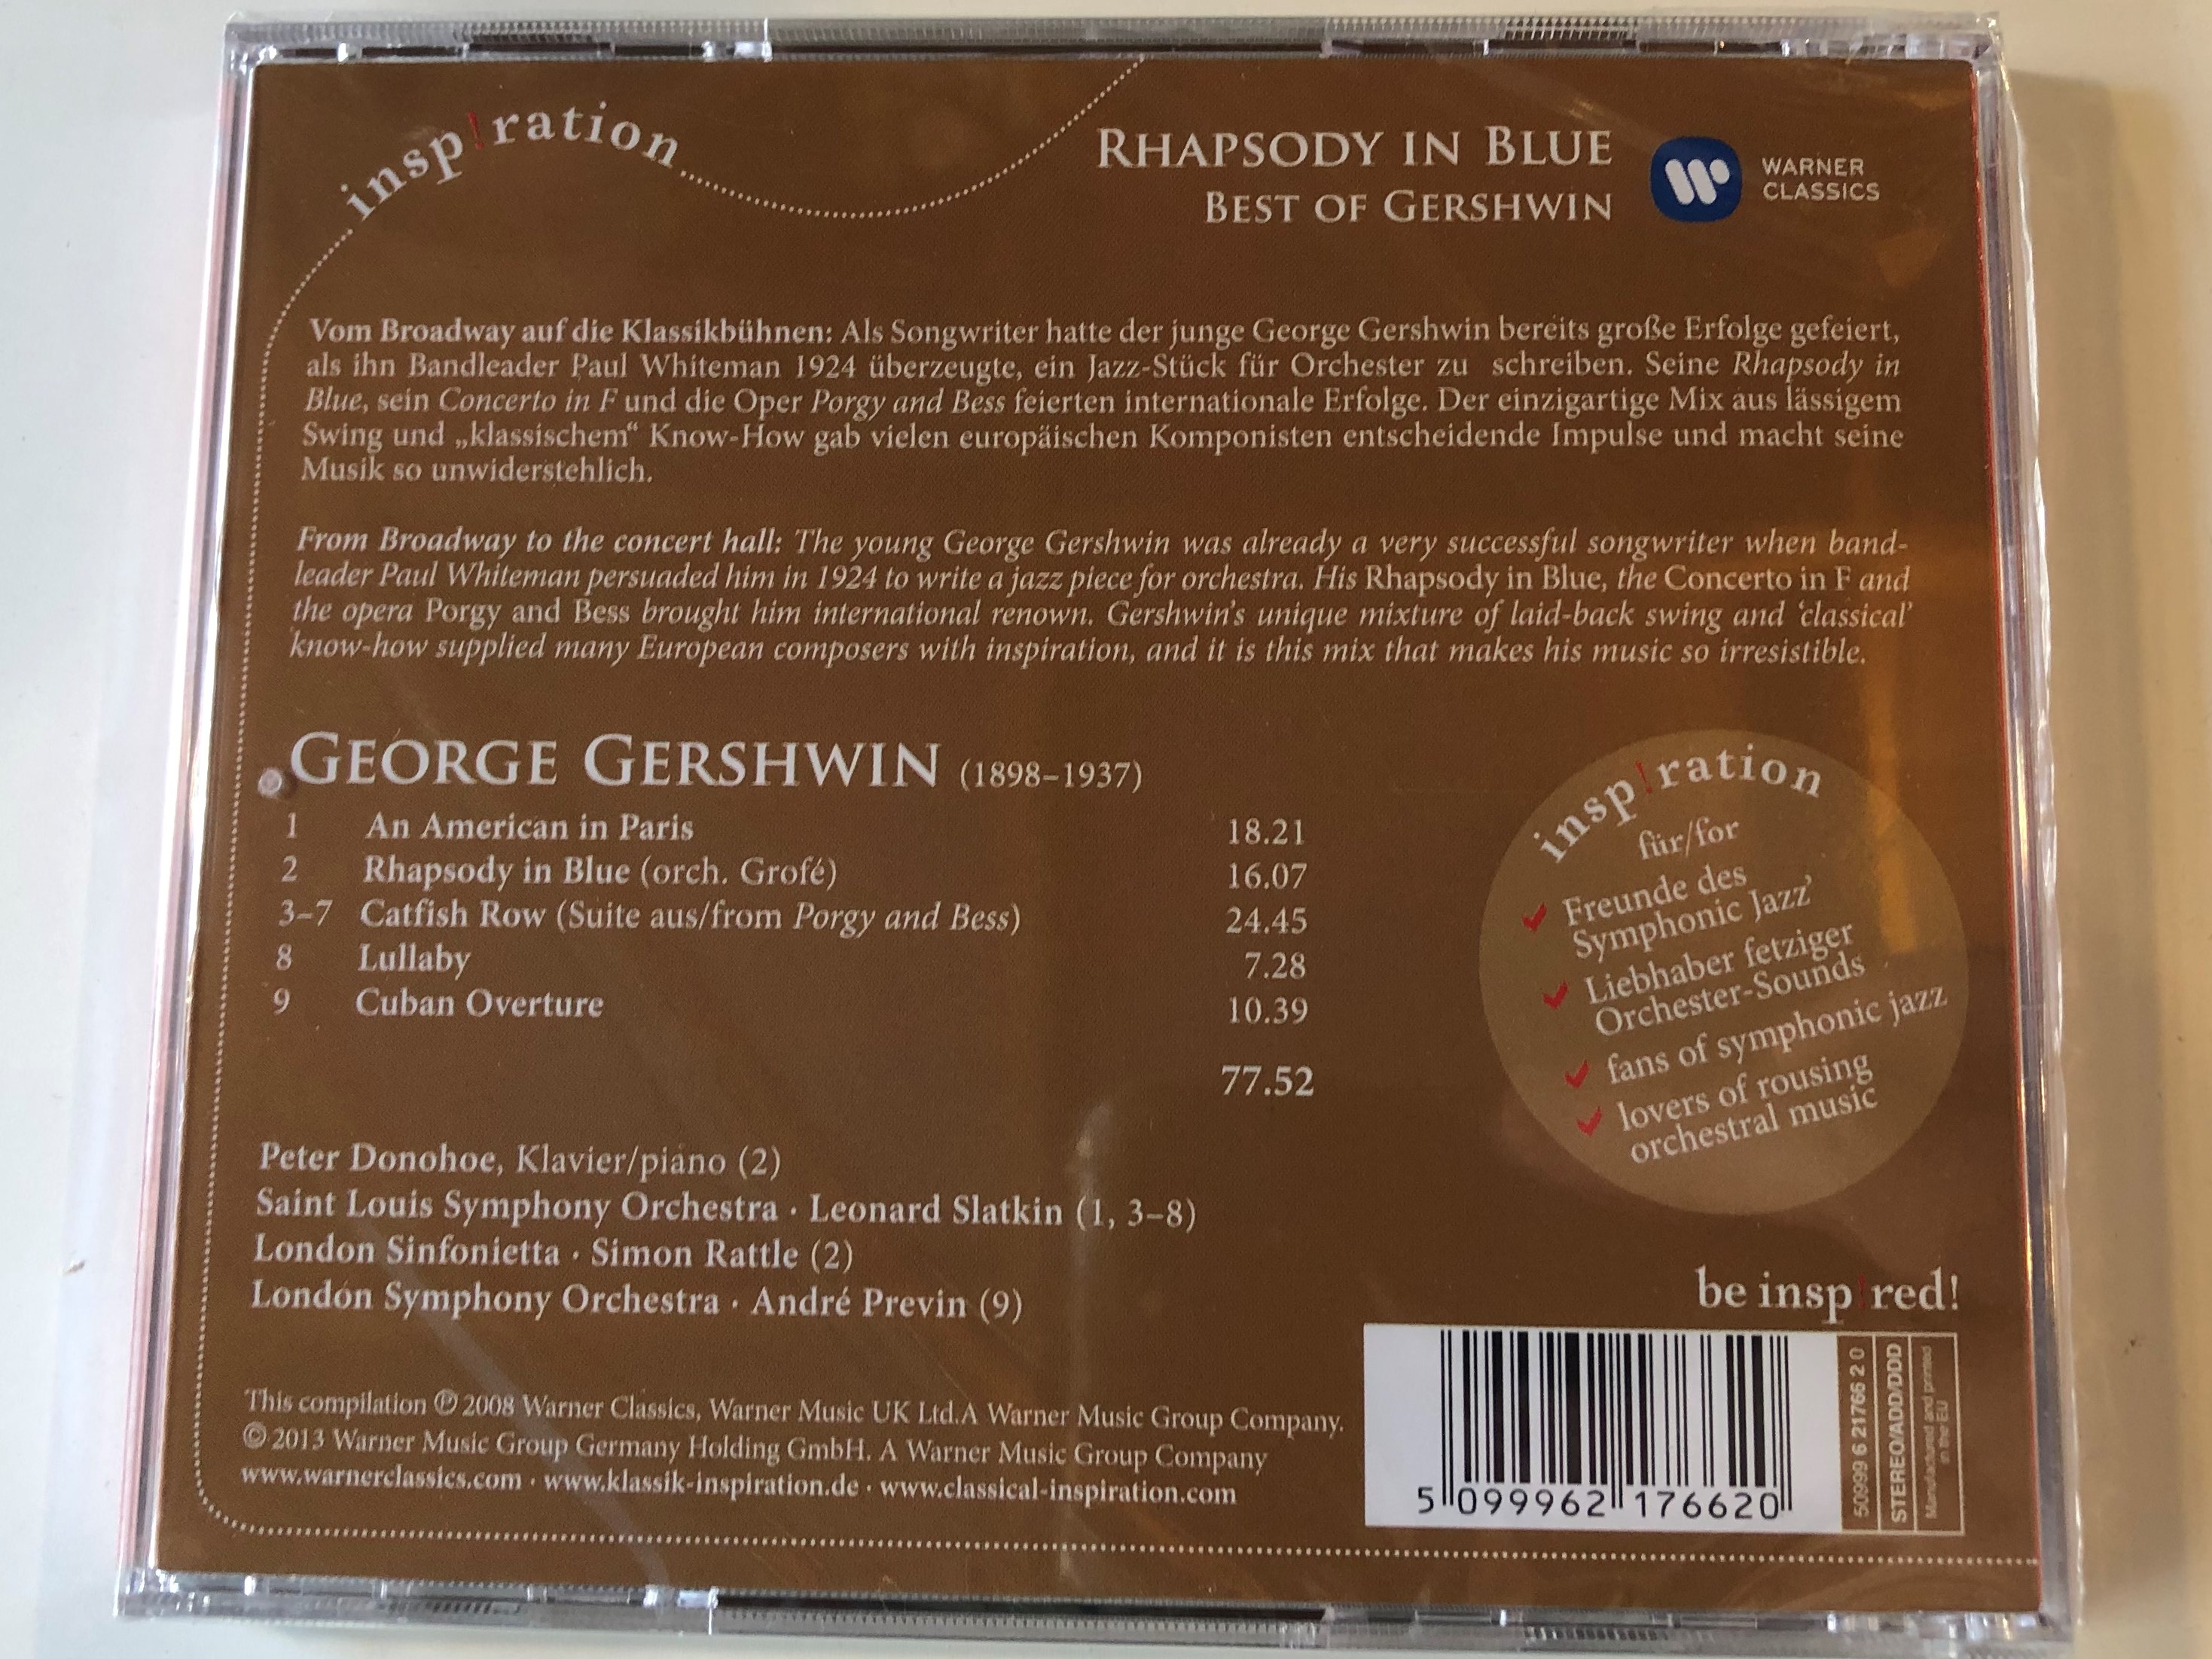 best-of-gershwin-rhapsody-in-blue-donohoe-rattle-previn-slatkin-warner-classics-audio-cd-2008-stereo-099962176620-2-.jpg